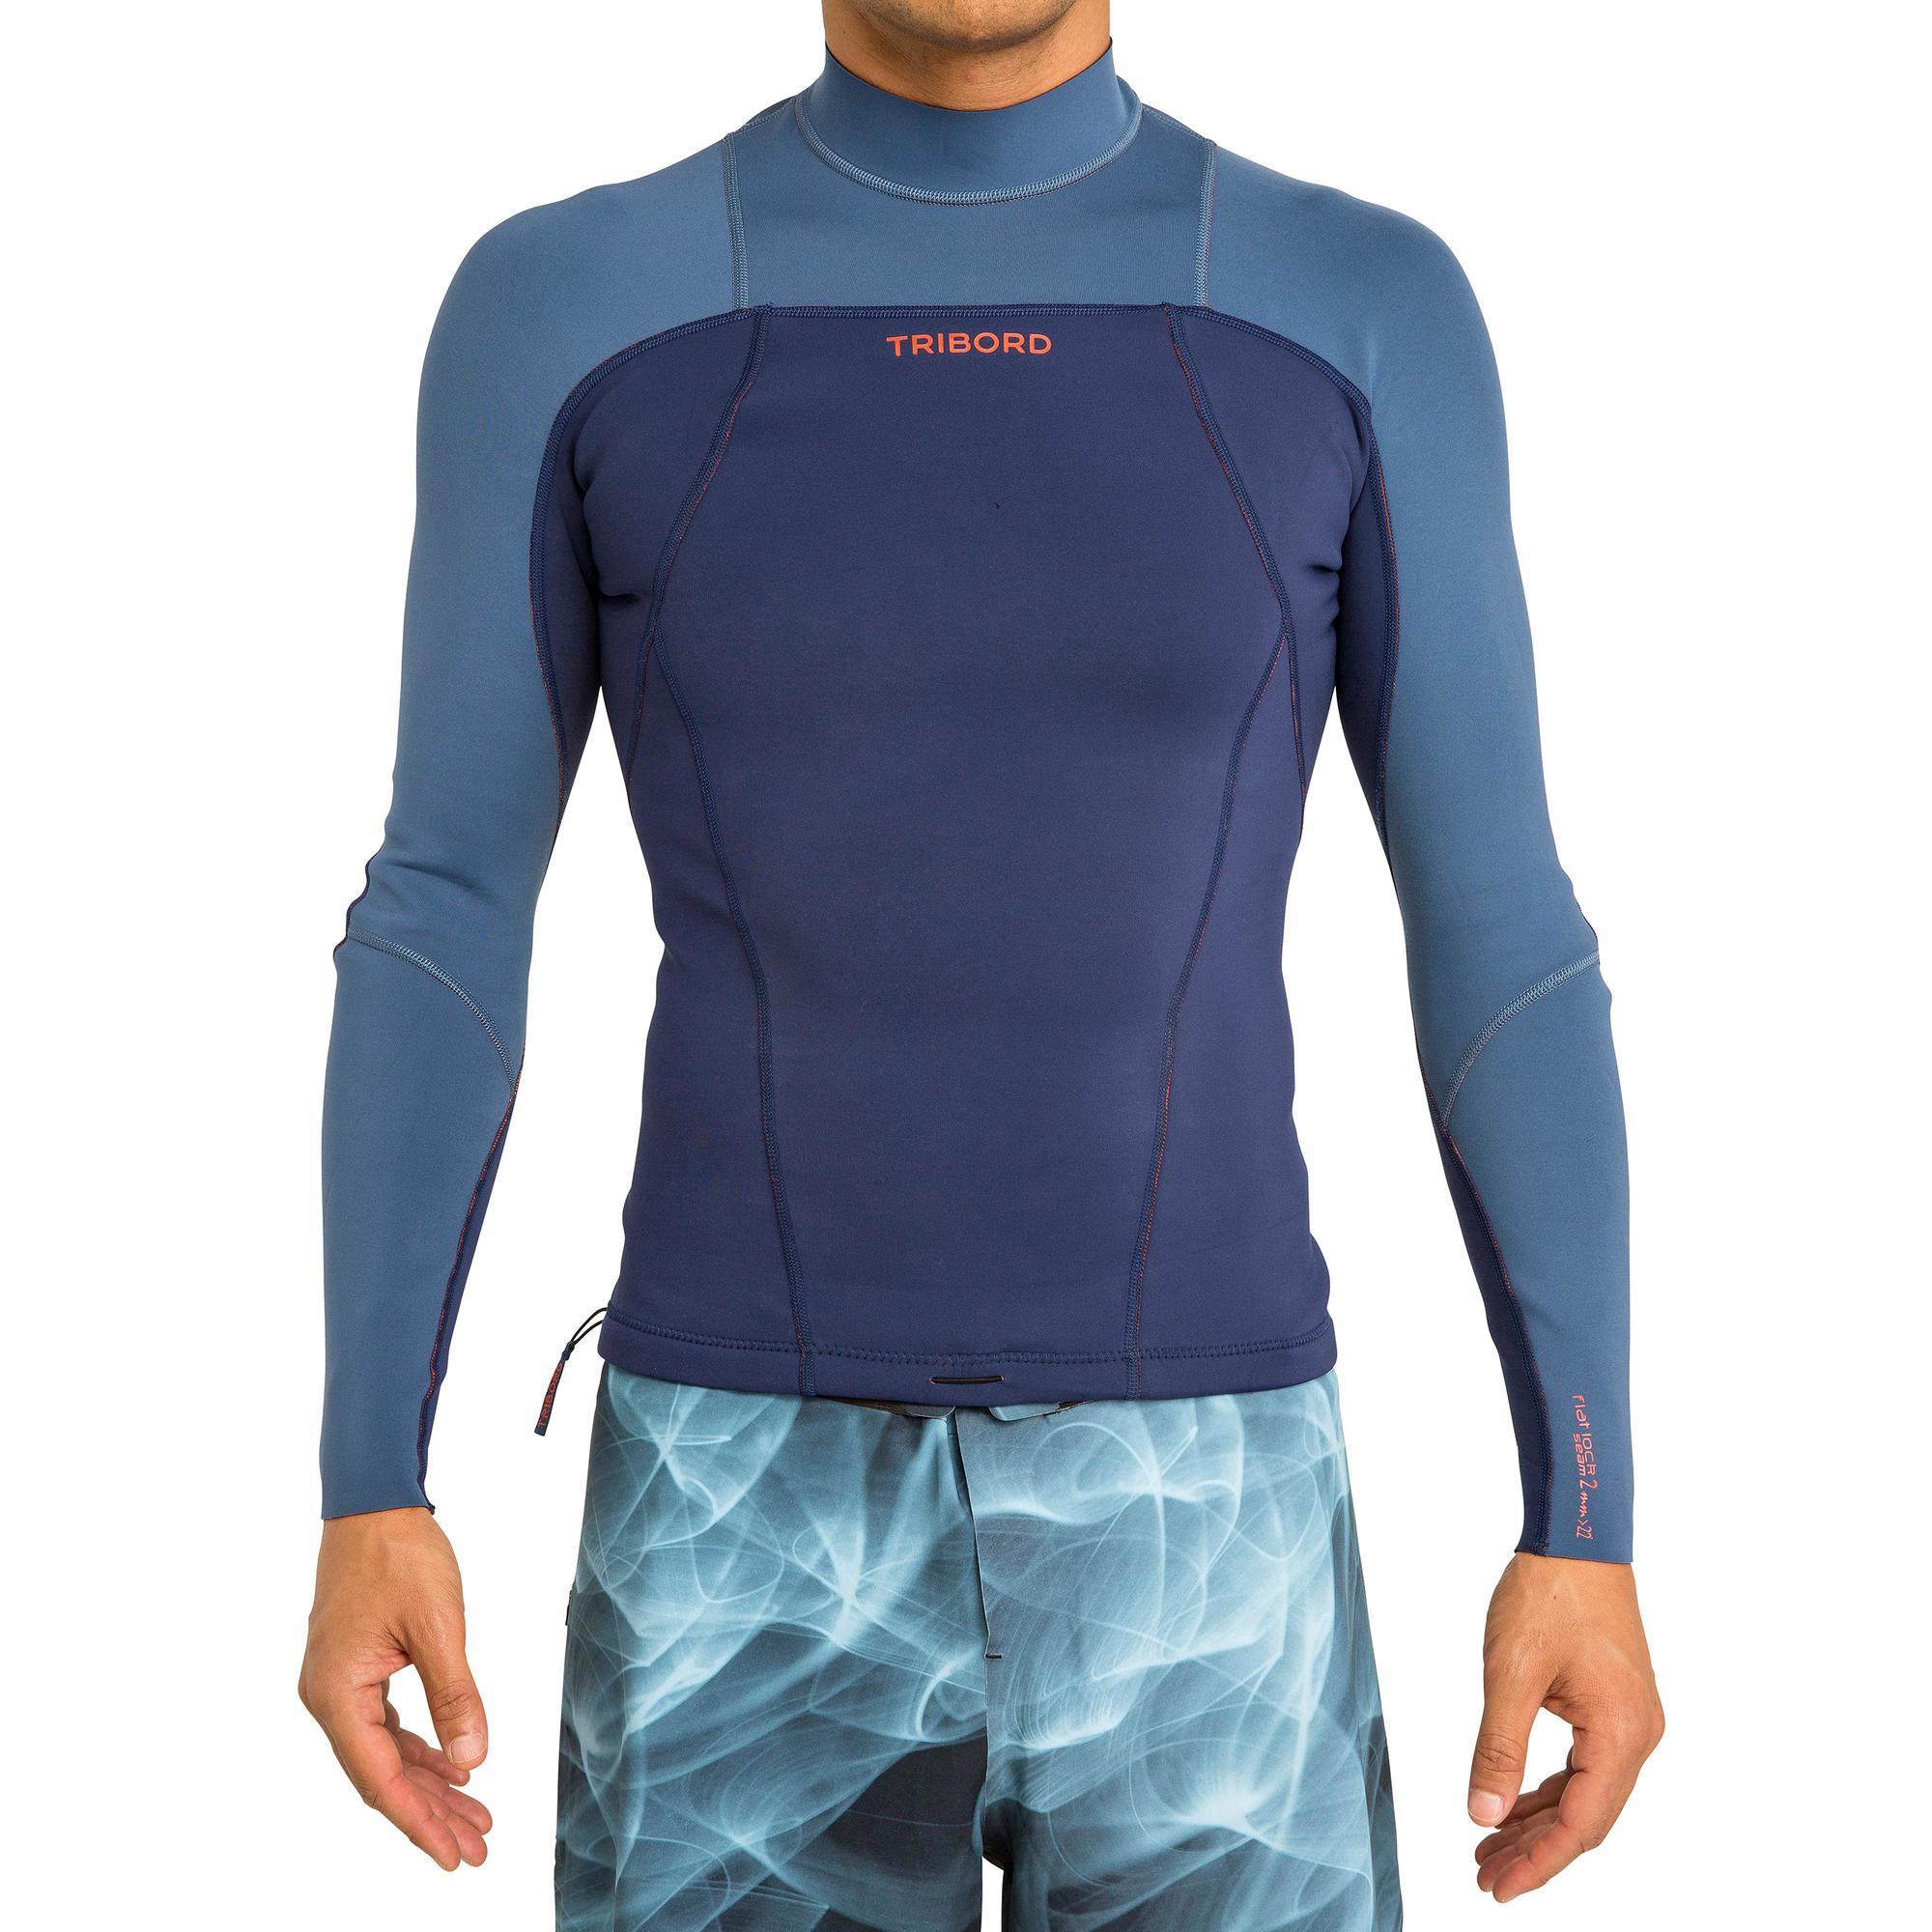 decathlon wetsuit top